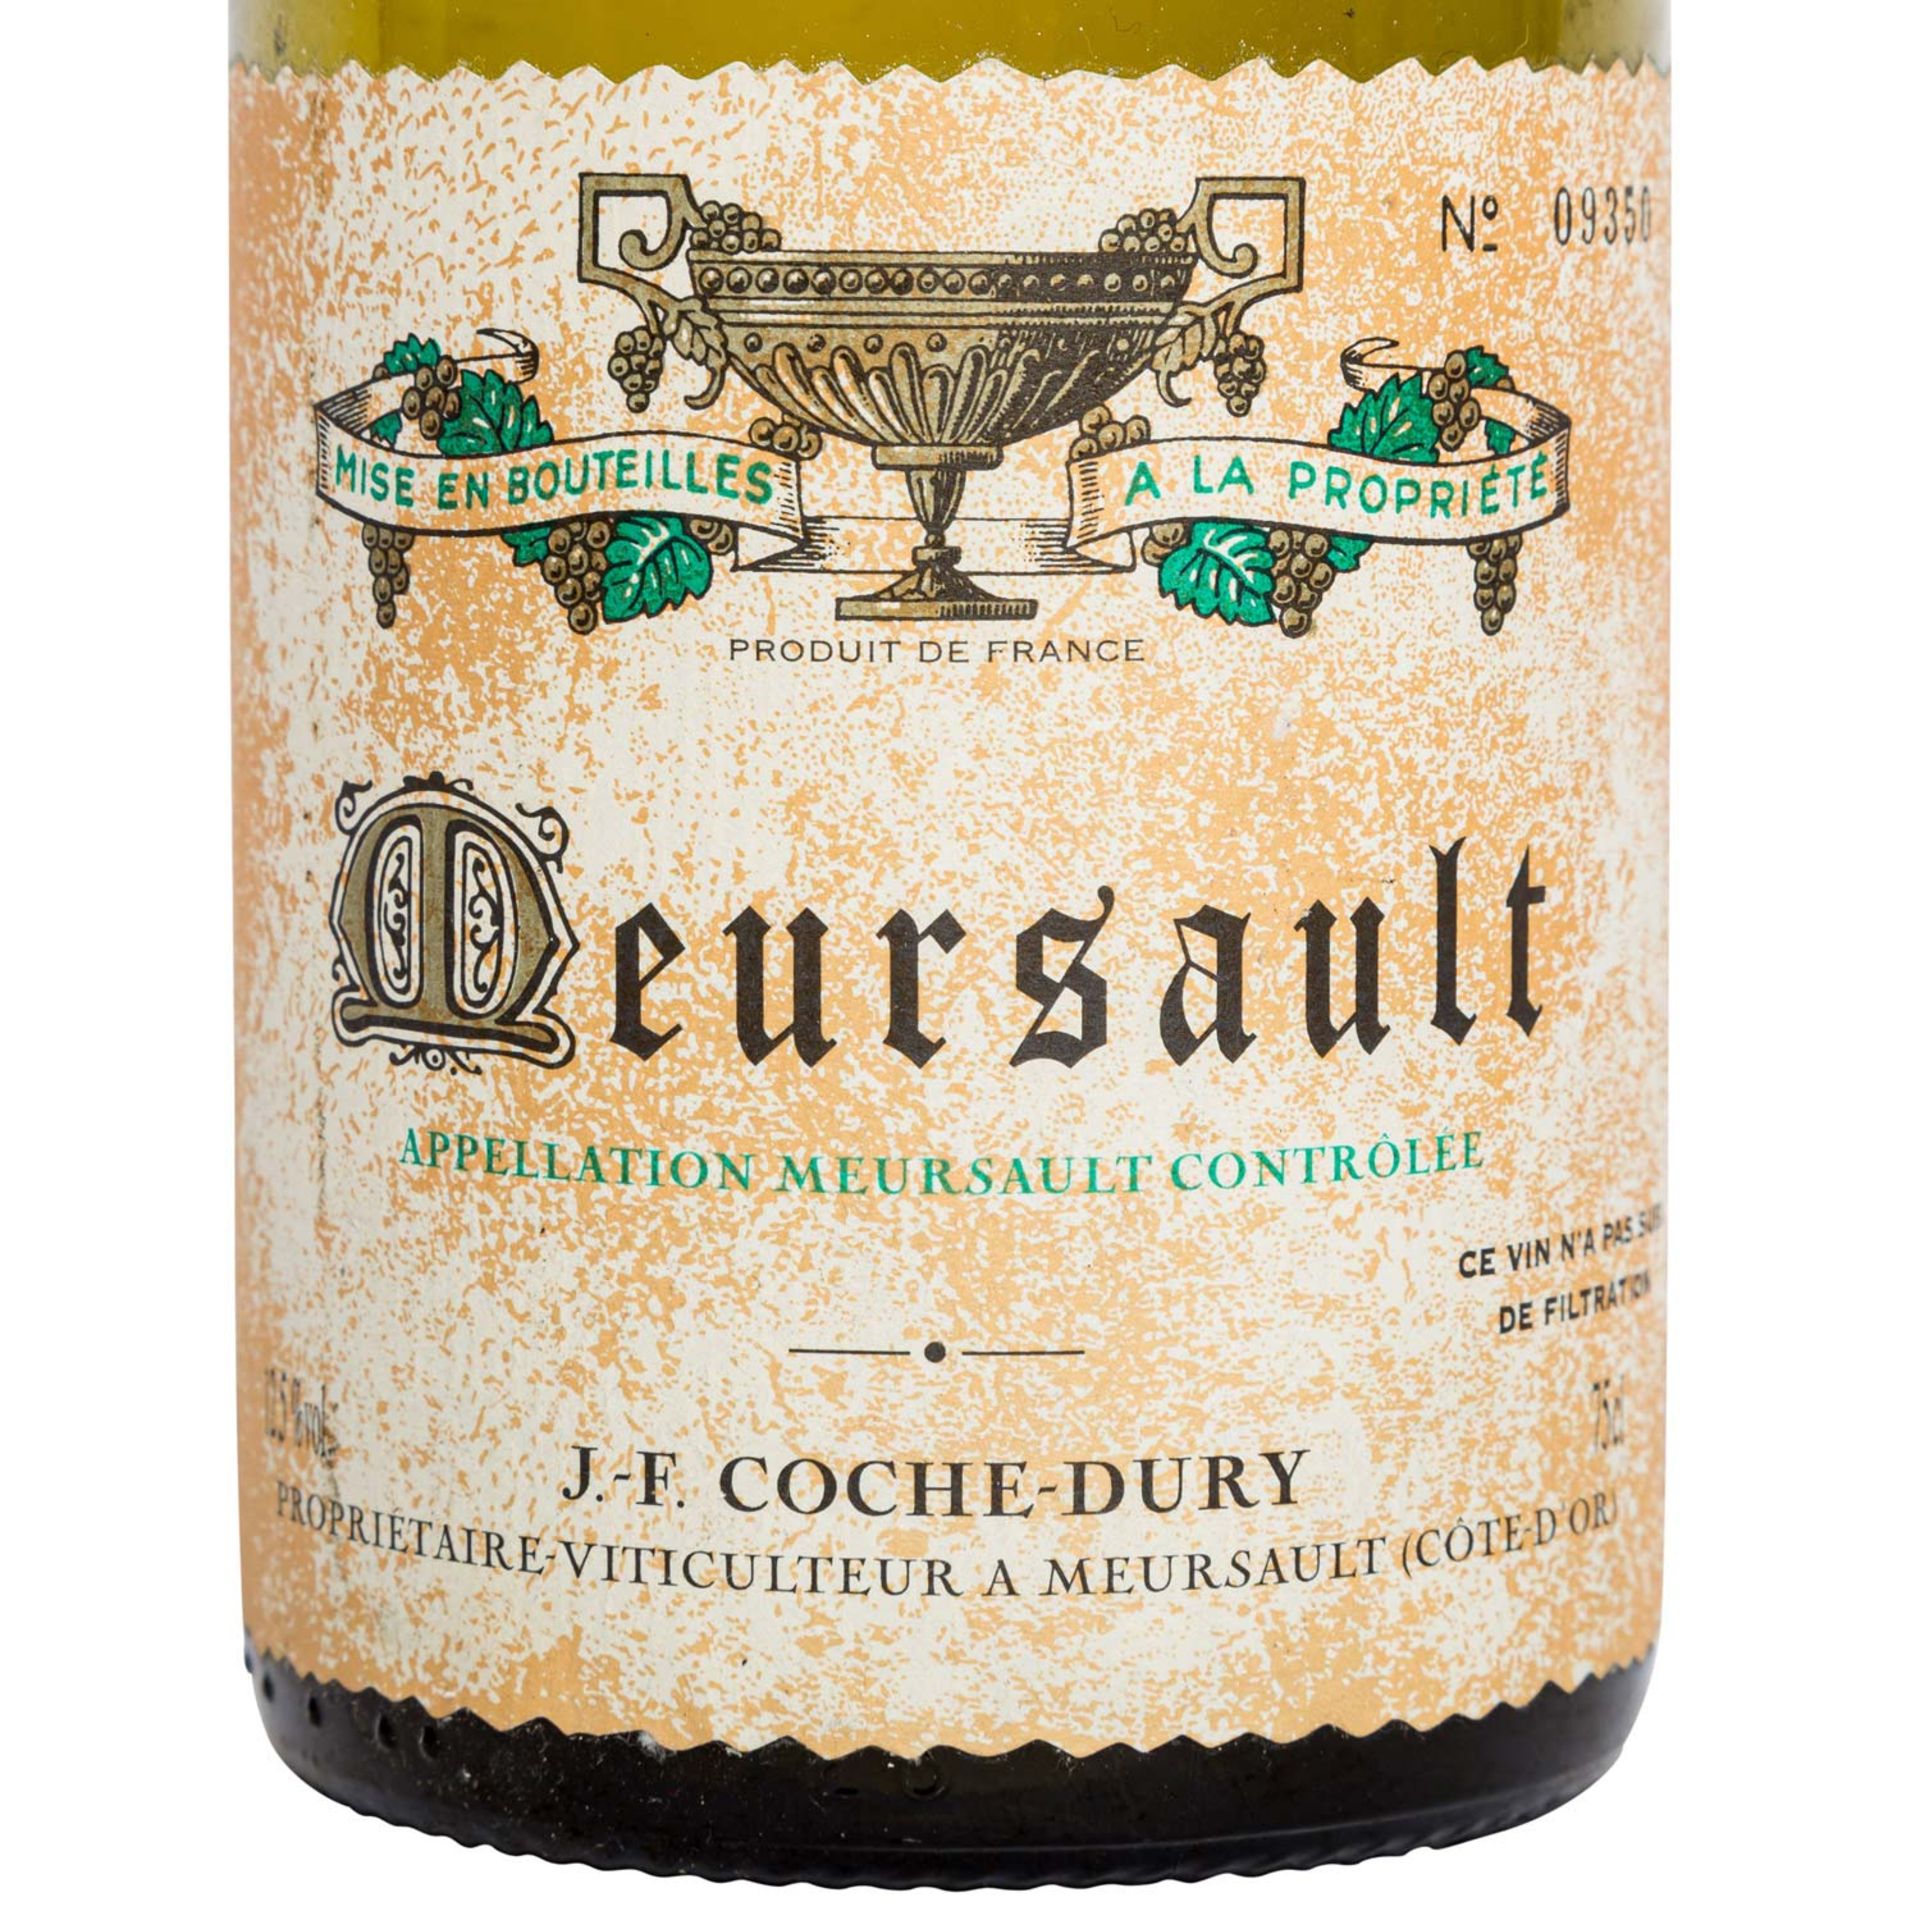 J.F. COCHE DURY 1 Flasche MEURSAULT 1997 - Bild 2 aus 4